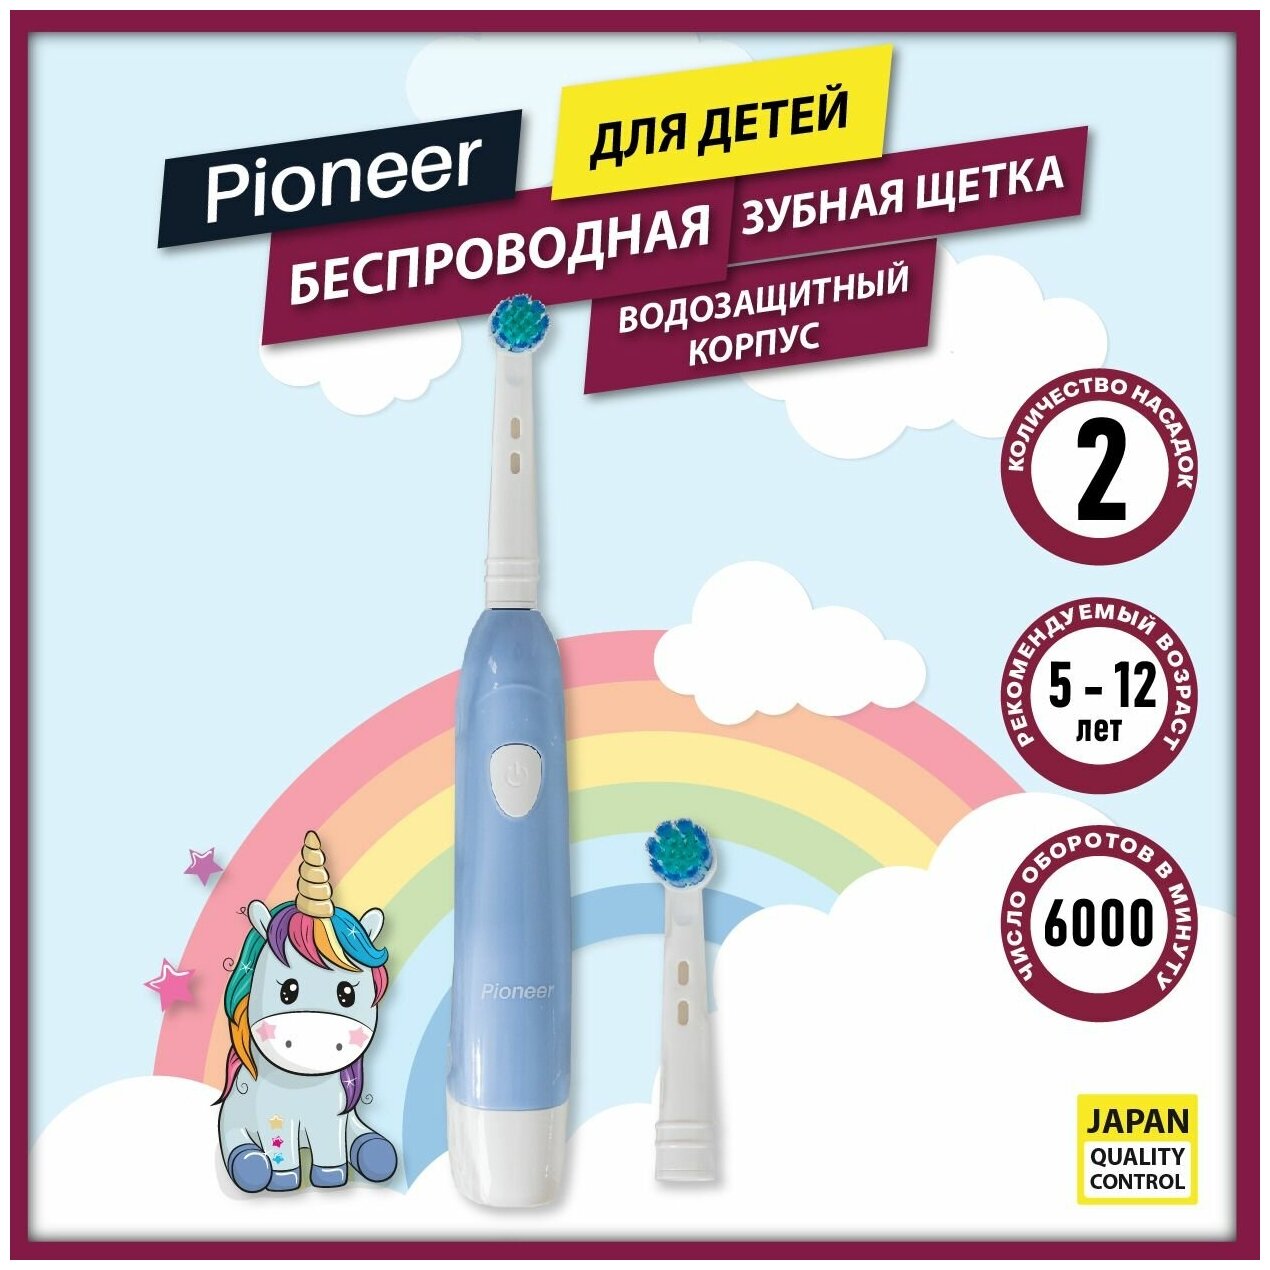 Детская электрическая зубная щетка Pioneer с автоотключением и таймером 30 секунд индикация заряда для детей от 5 до 12 лет